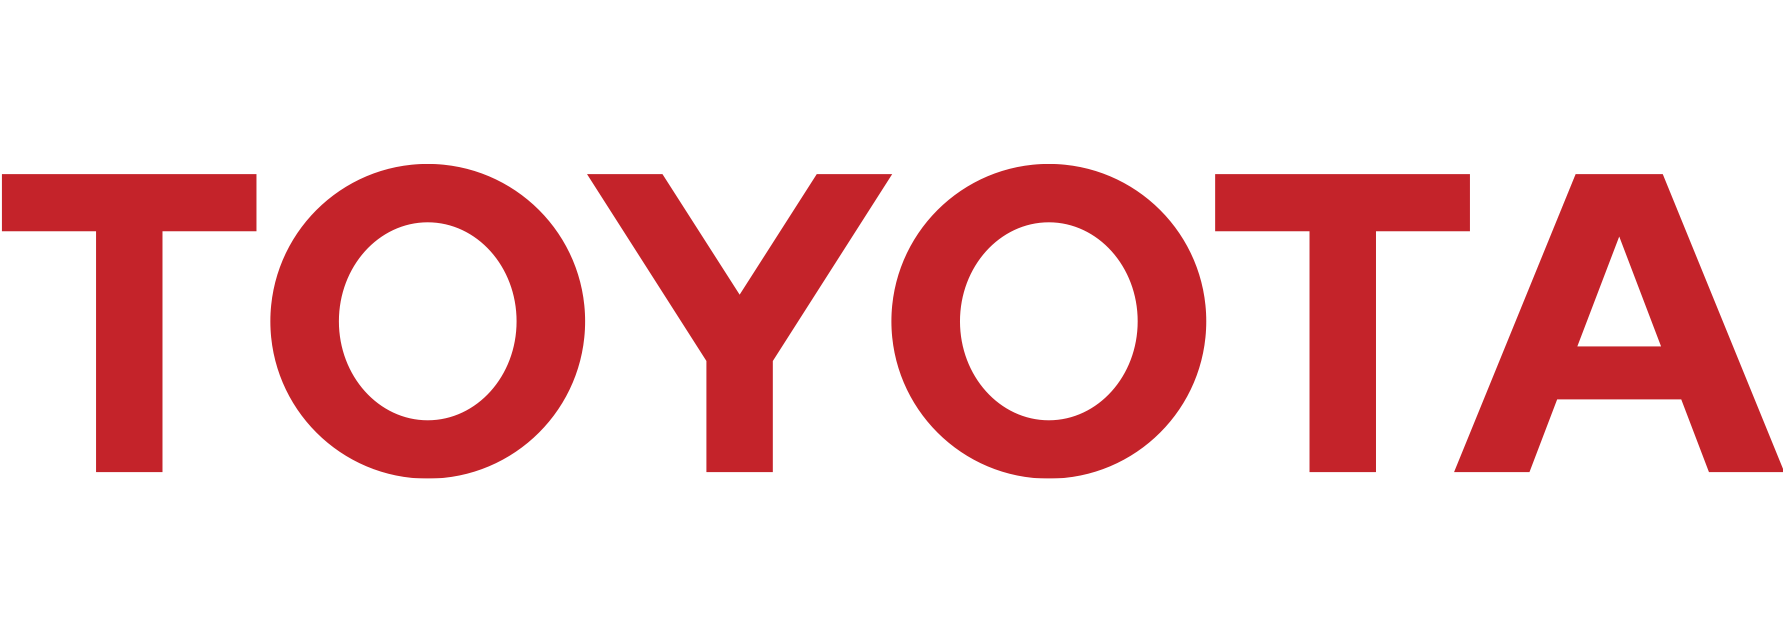 Website_Sponsor Logo_Toyota.png